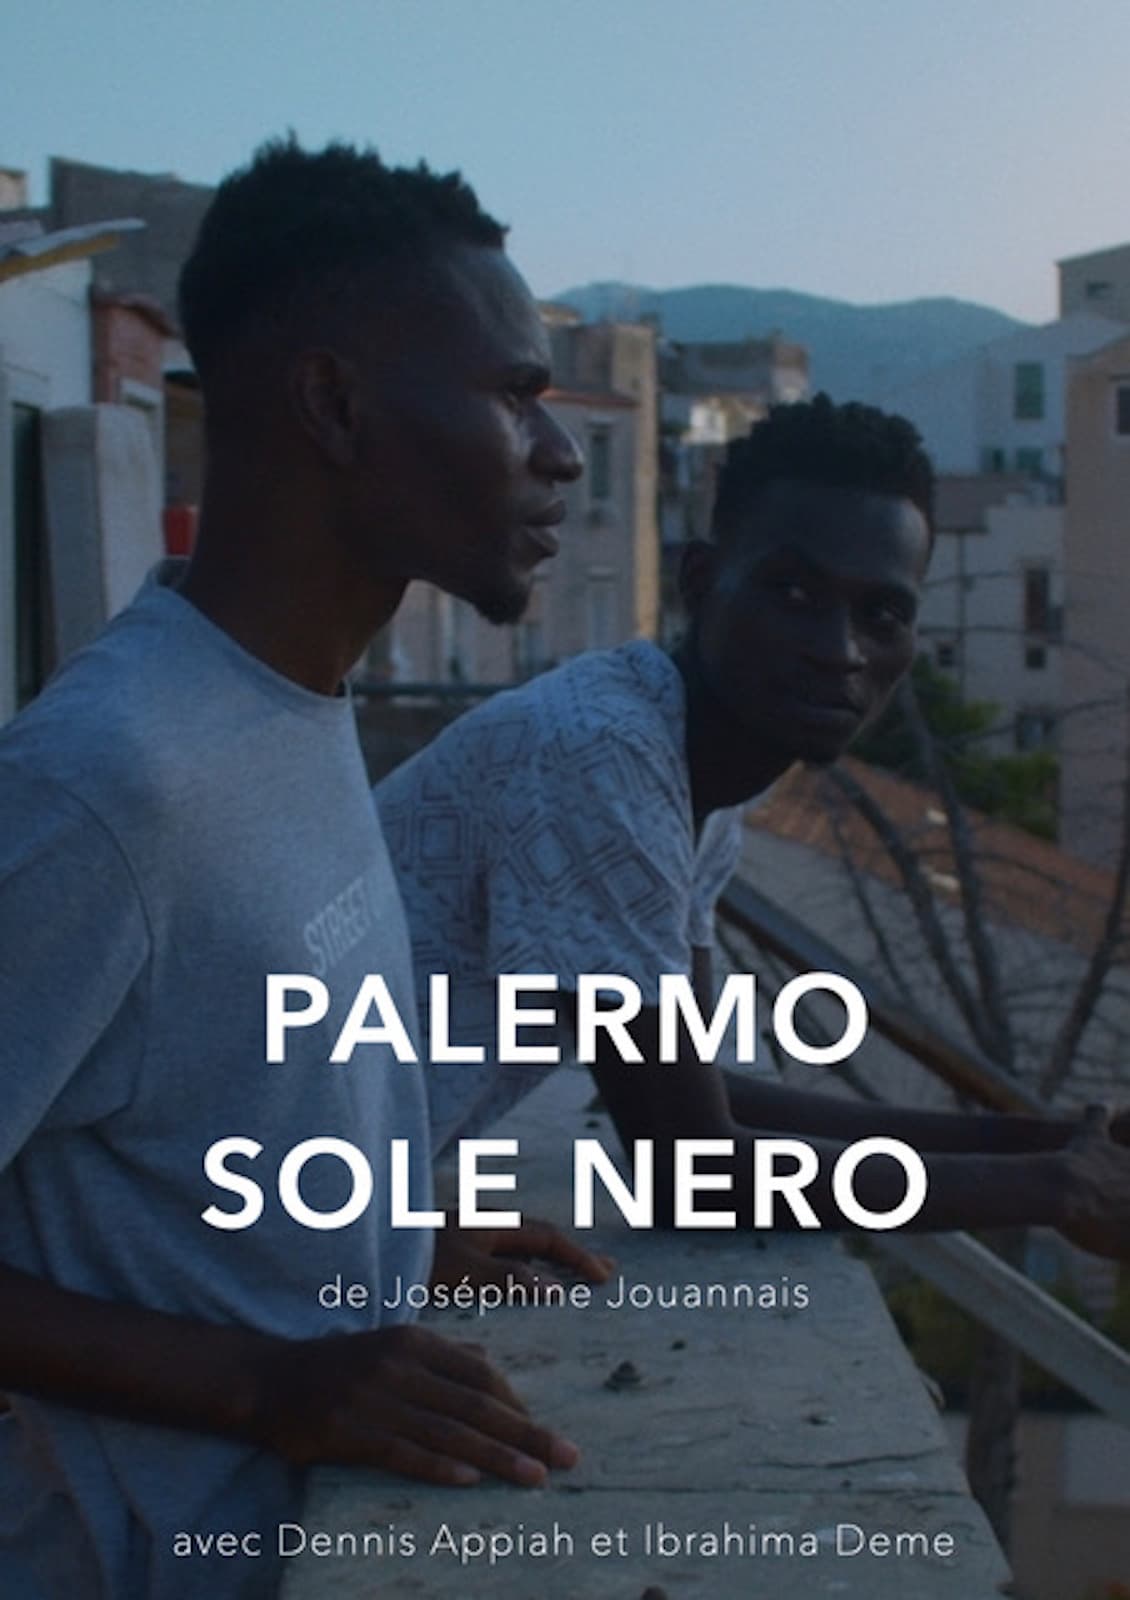 Palermo Sole Nero